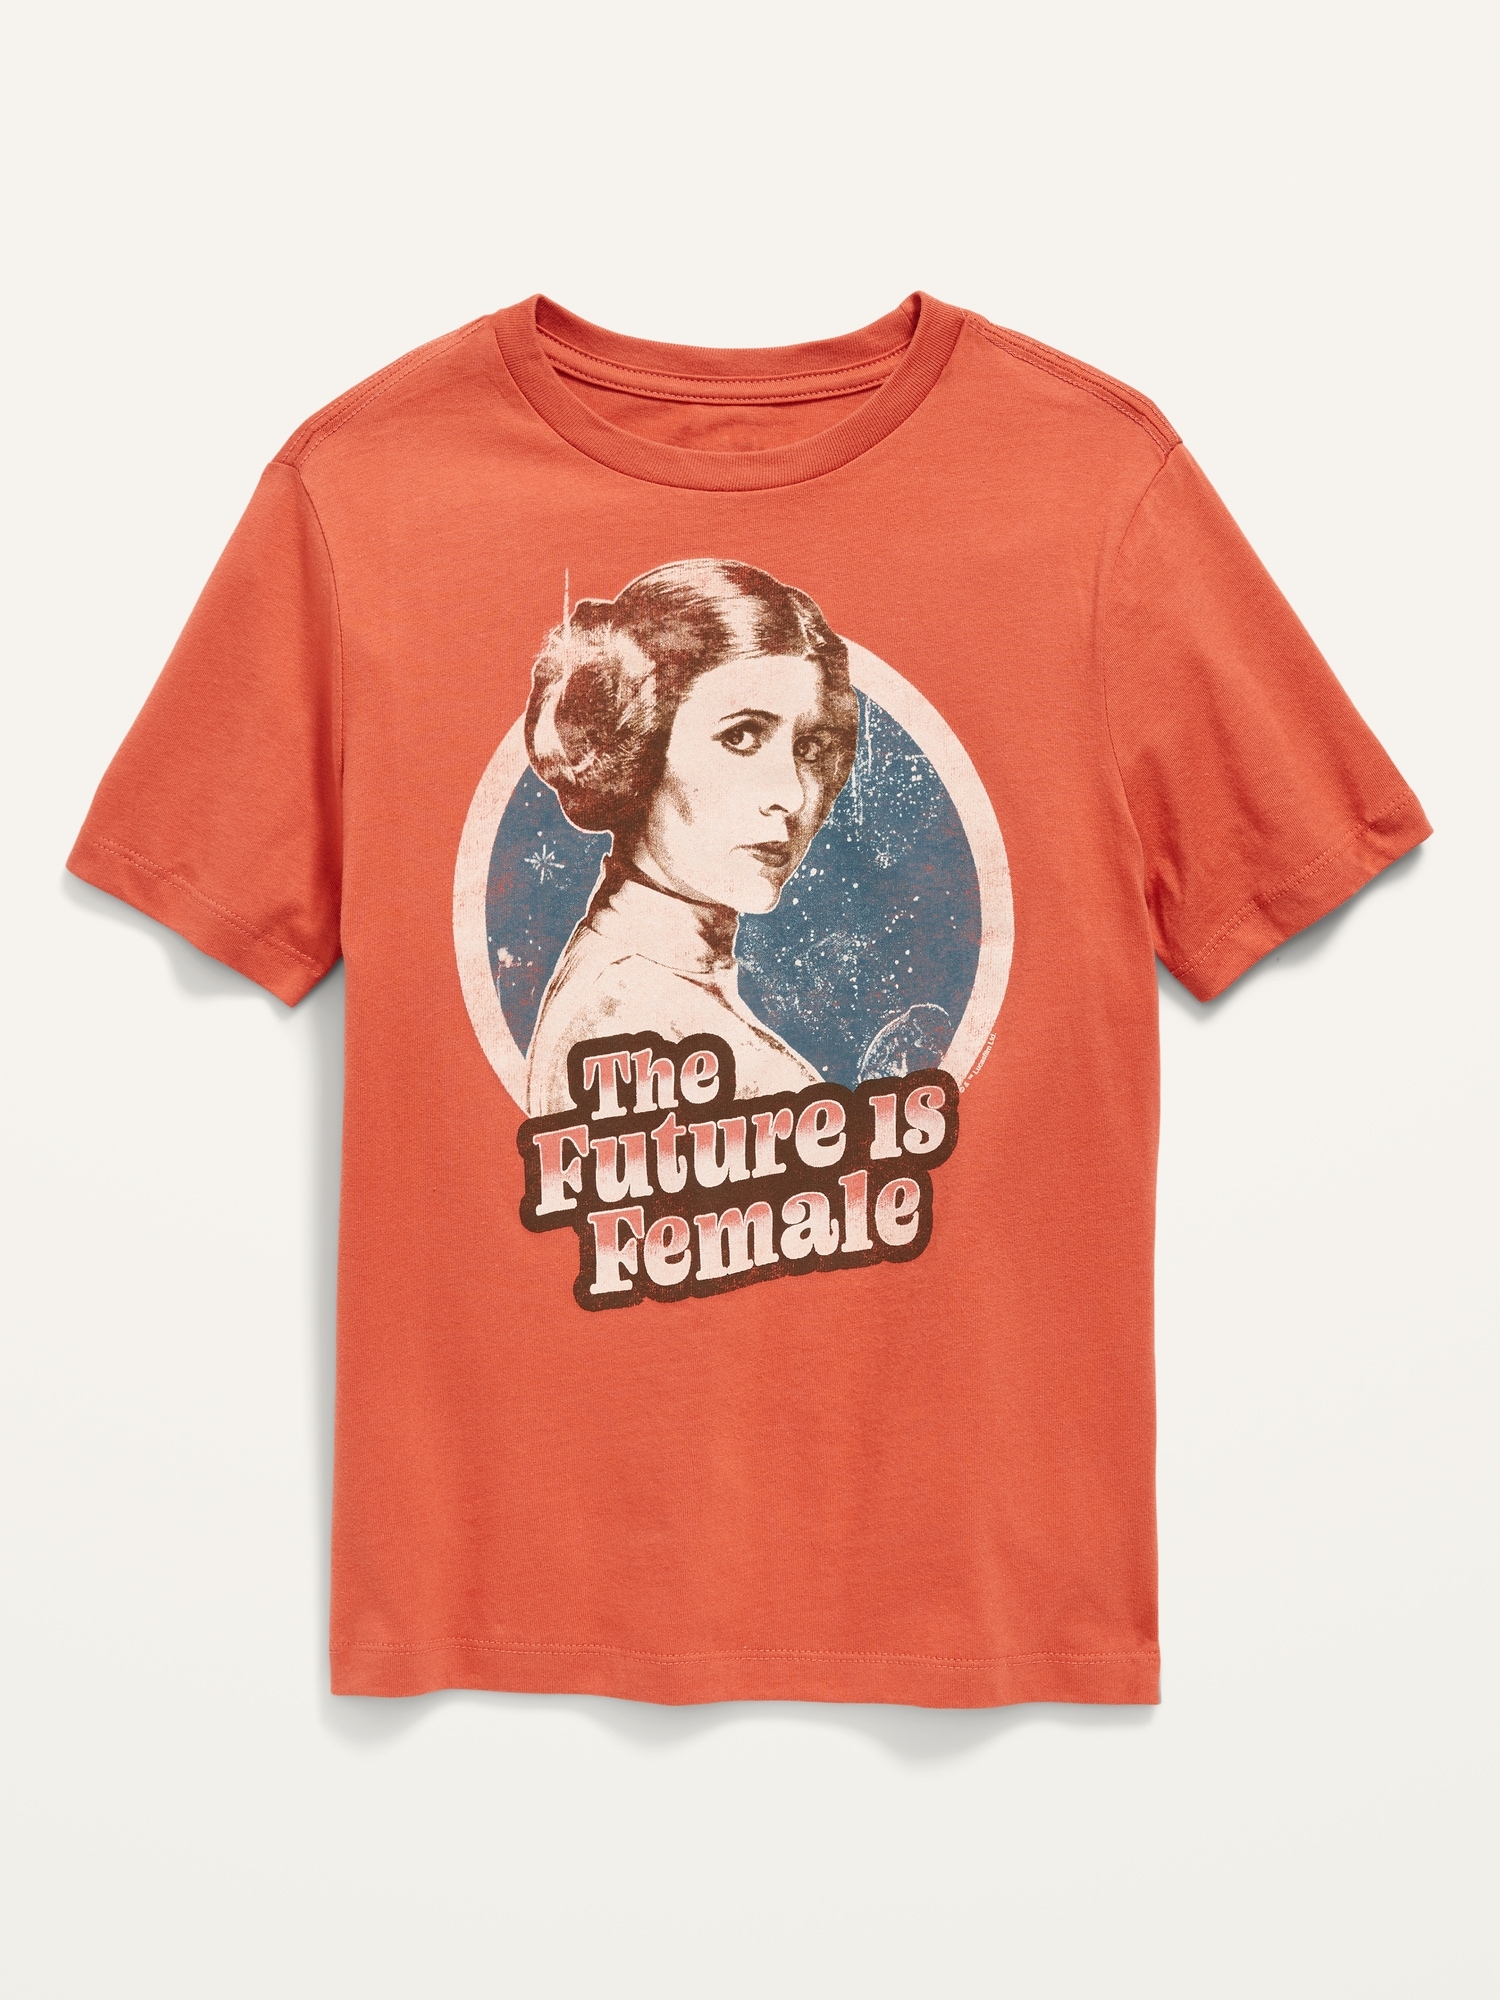 Oldnavy Gender-Neutral Licensed Pop-Culture Graphic T-Shirt for Kids